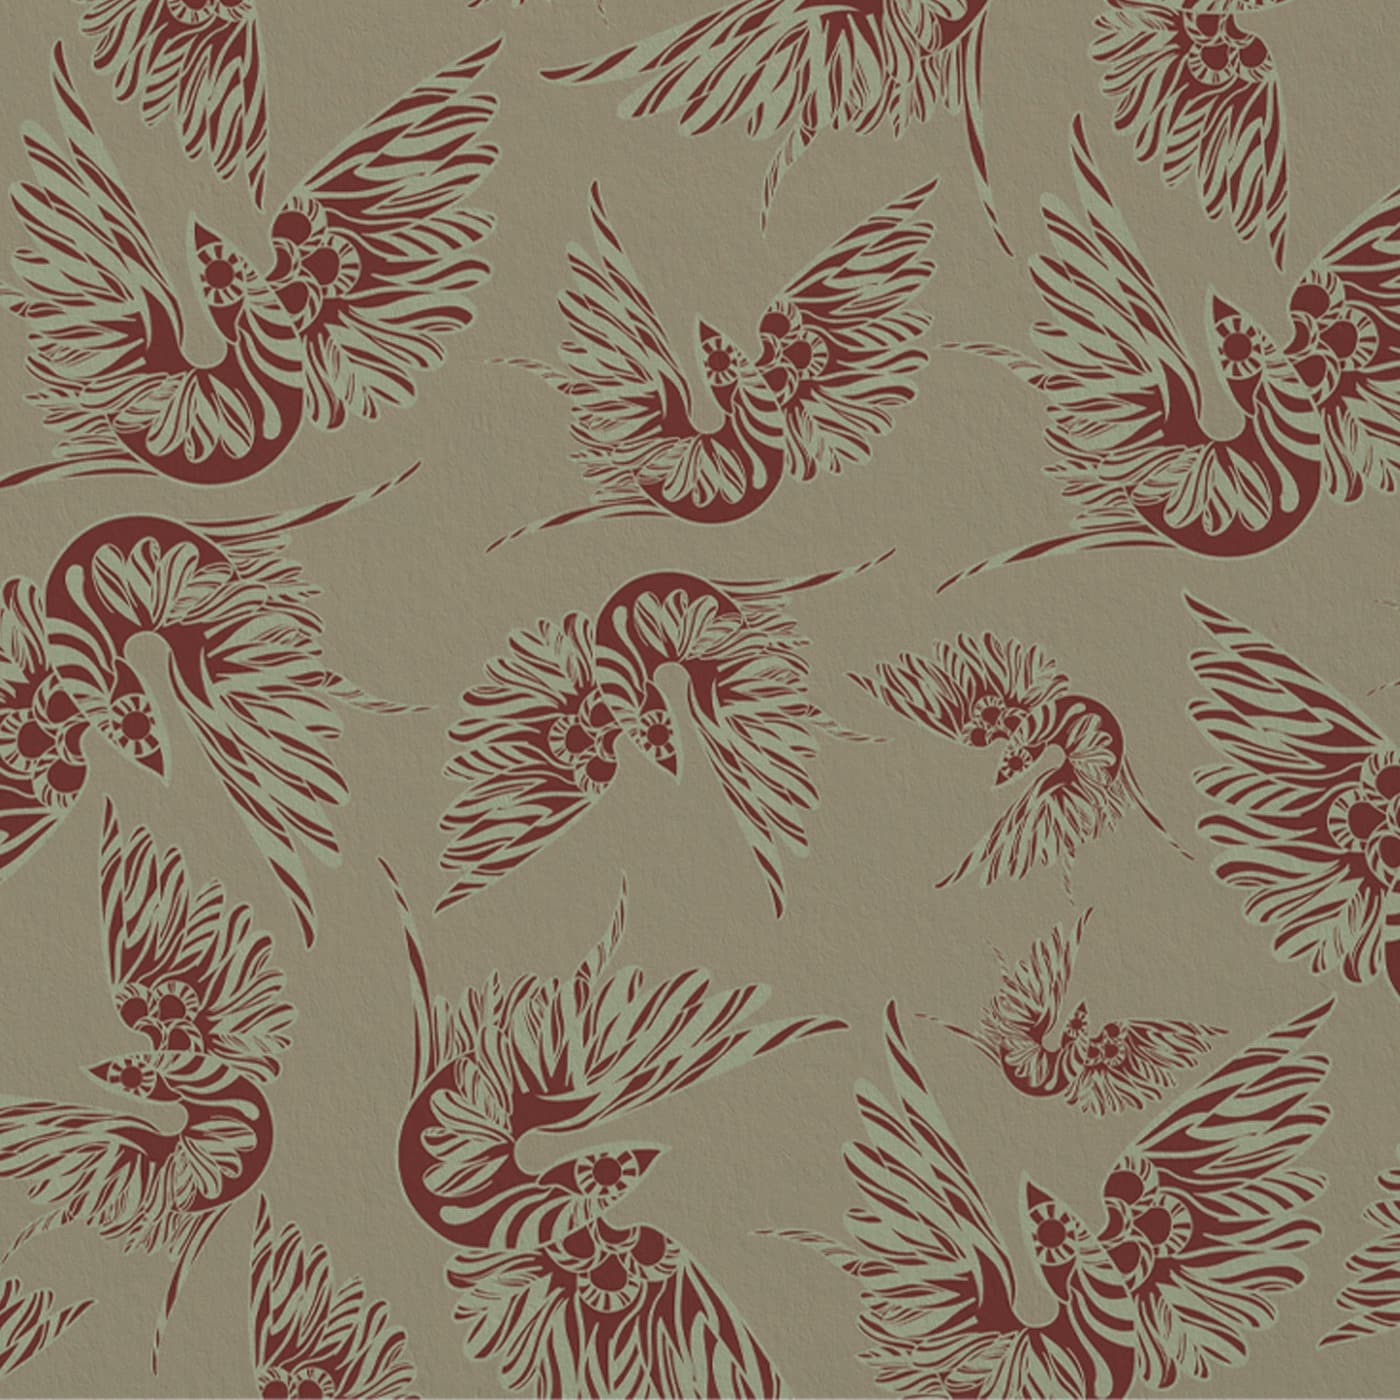 Misteriosa-Beige-Terra-di-Siena-Wallpaper-Leonardo-Dini-x-MaVoix-Collezione-Essenziali-pattern.